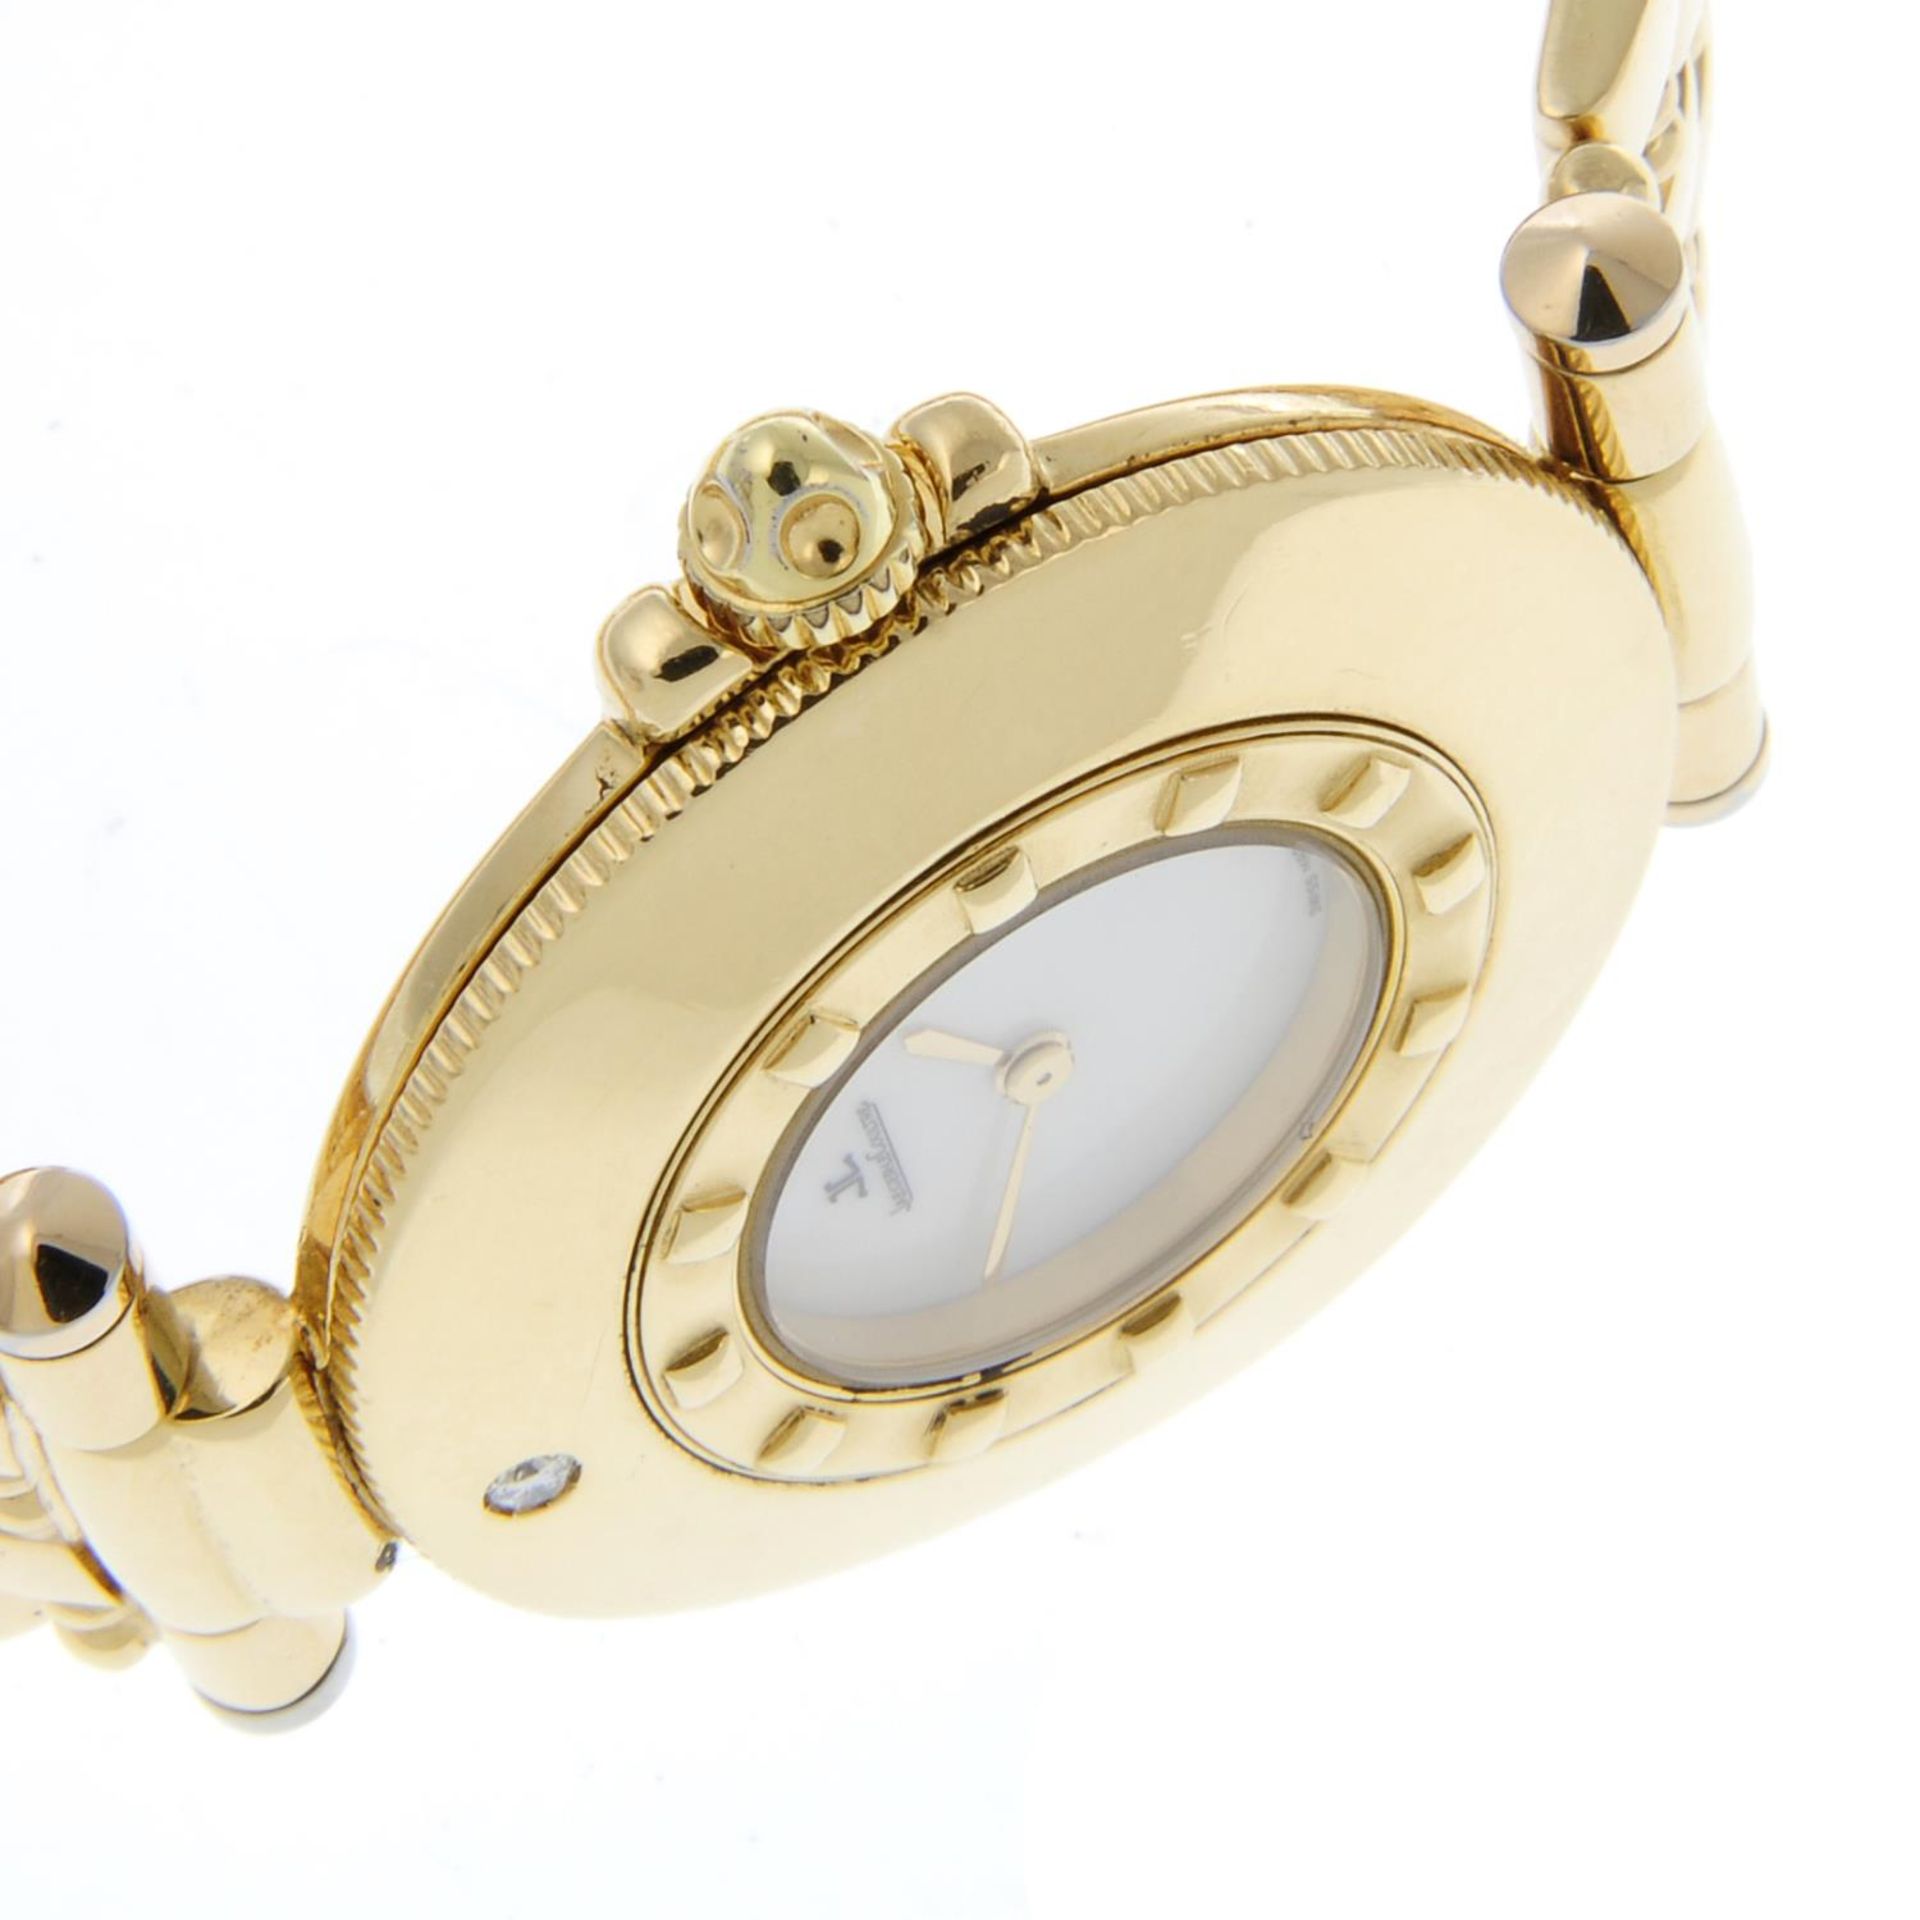 JAEGER-LECOULTRE - a Carnet De Rendez Vous bracelet watch. - Image 4 of 6